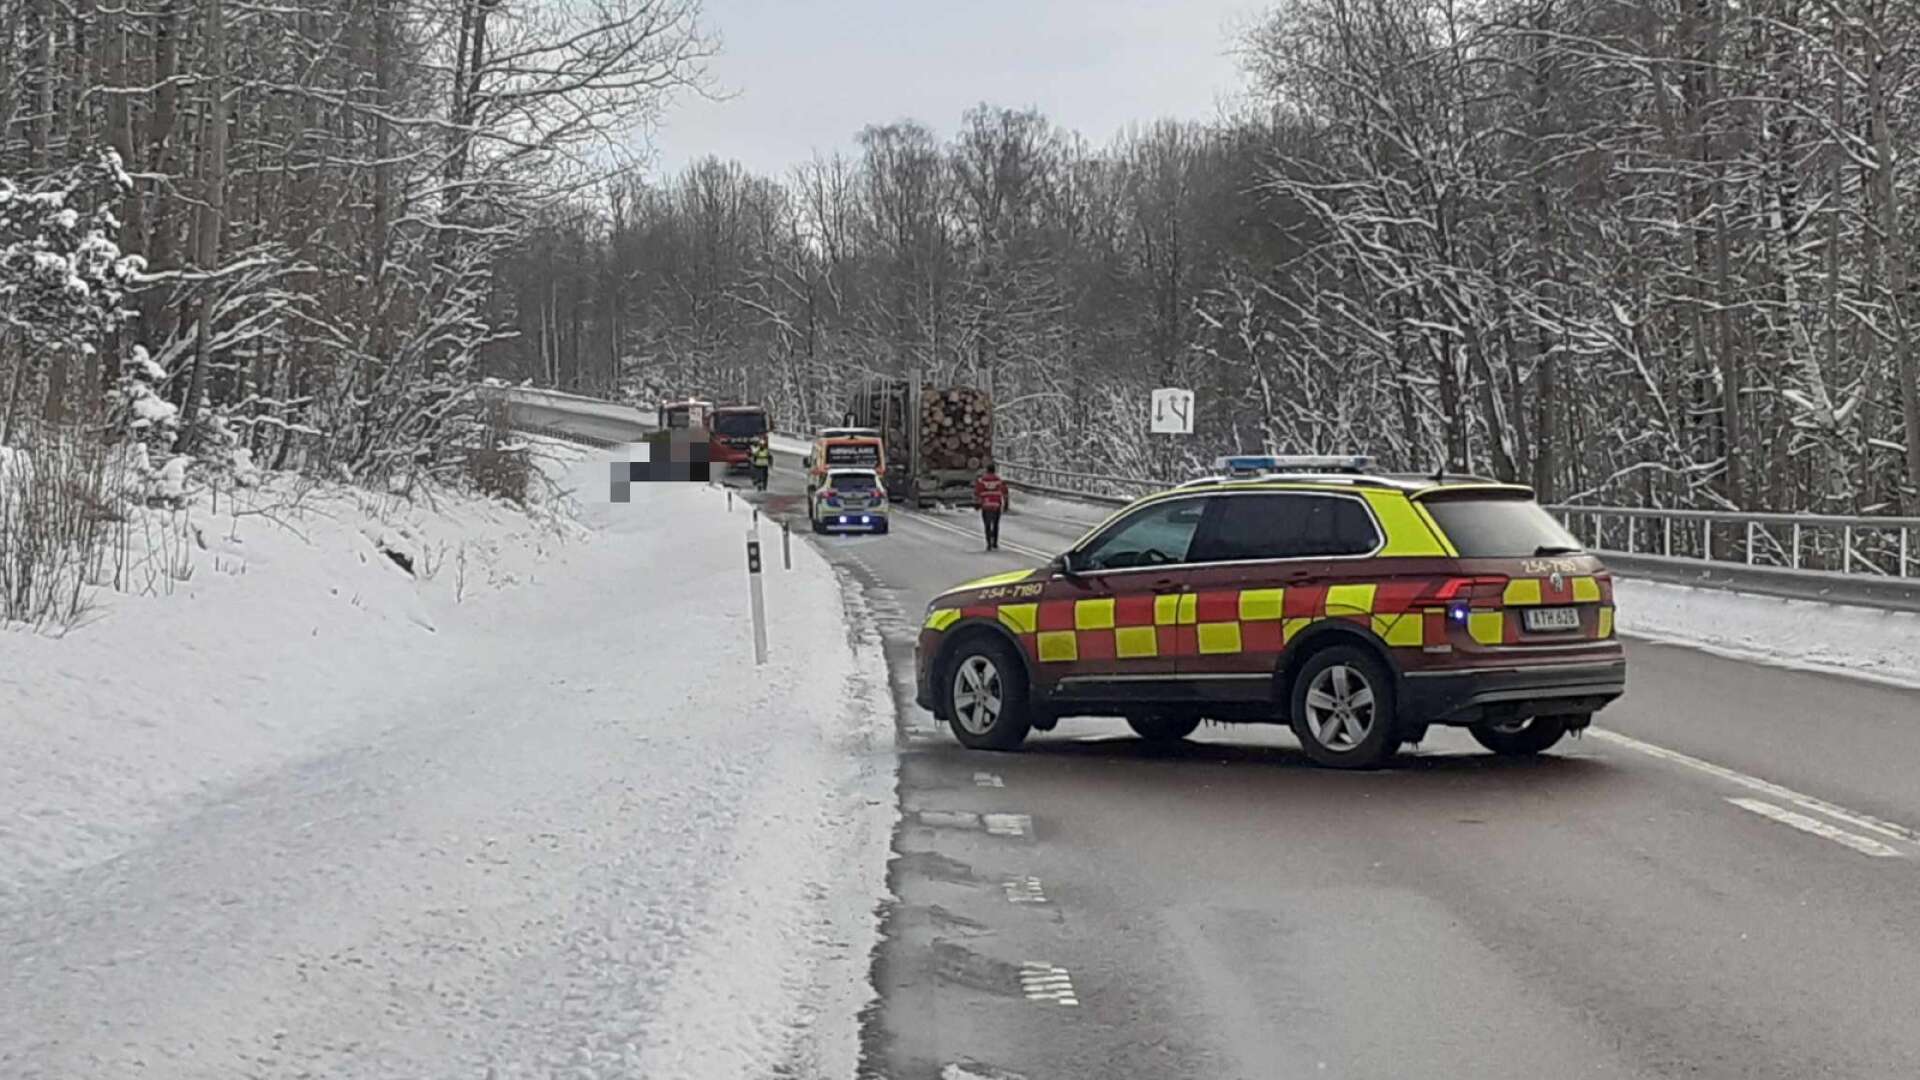 Det var i torsdags i förra veckan som en personbil kolliderade med en timmerbil på väg 164 i Edsleskog utanför Åmål.